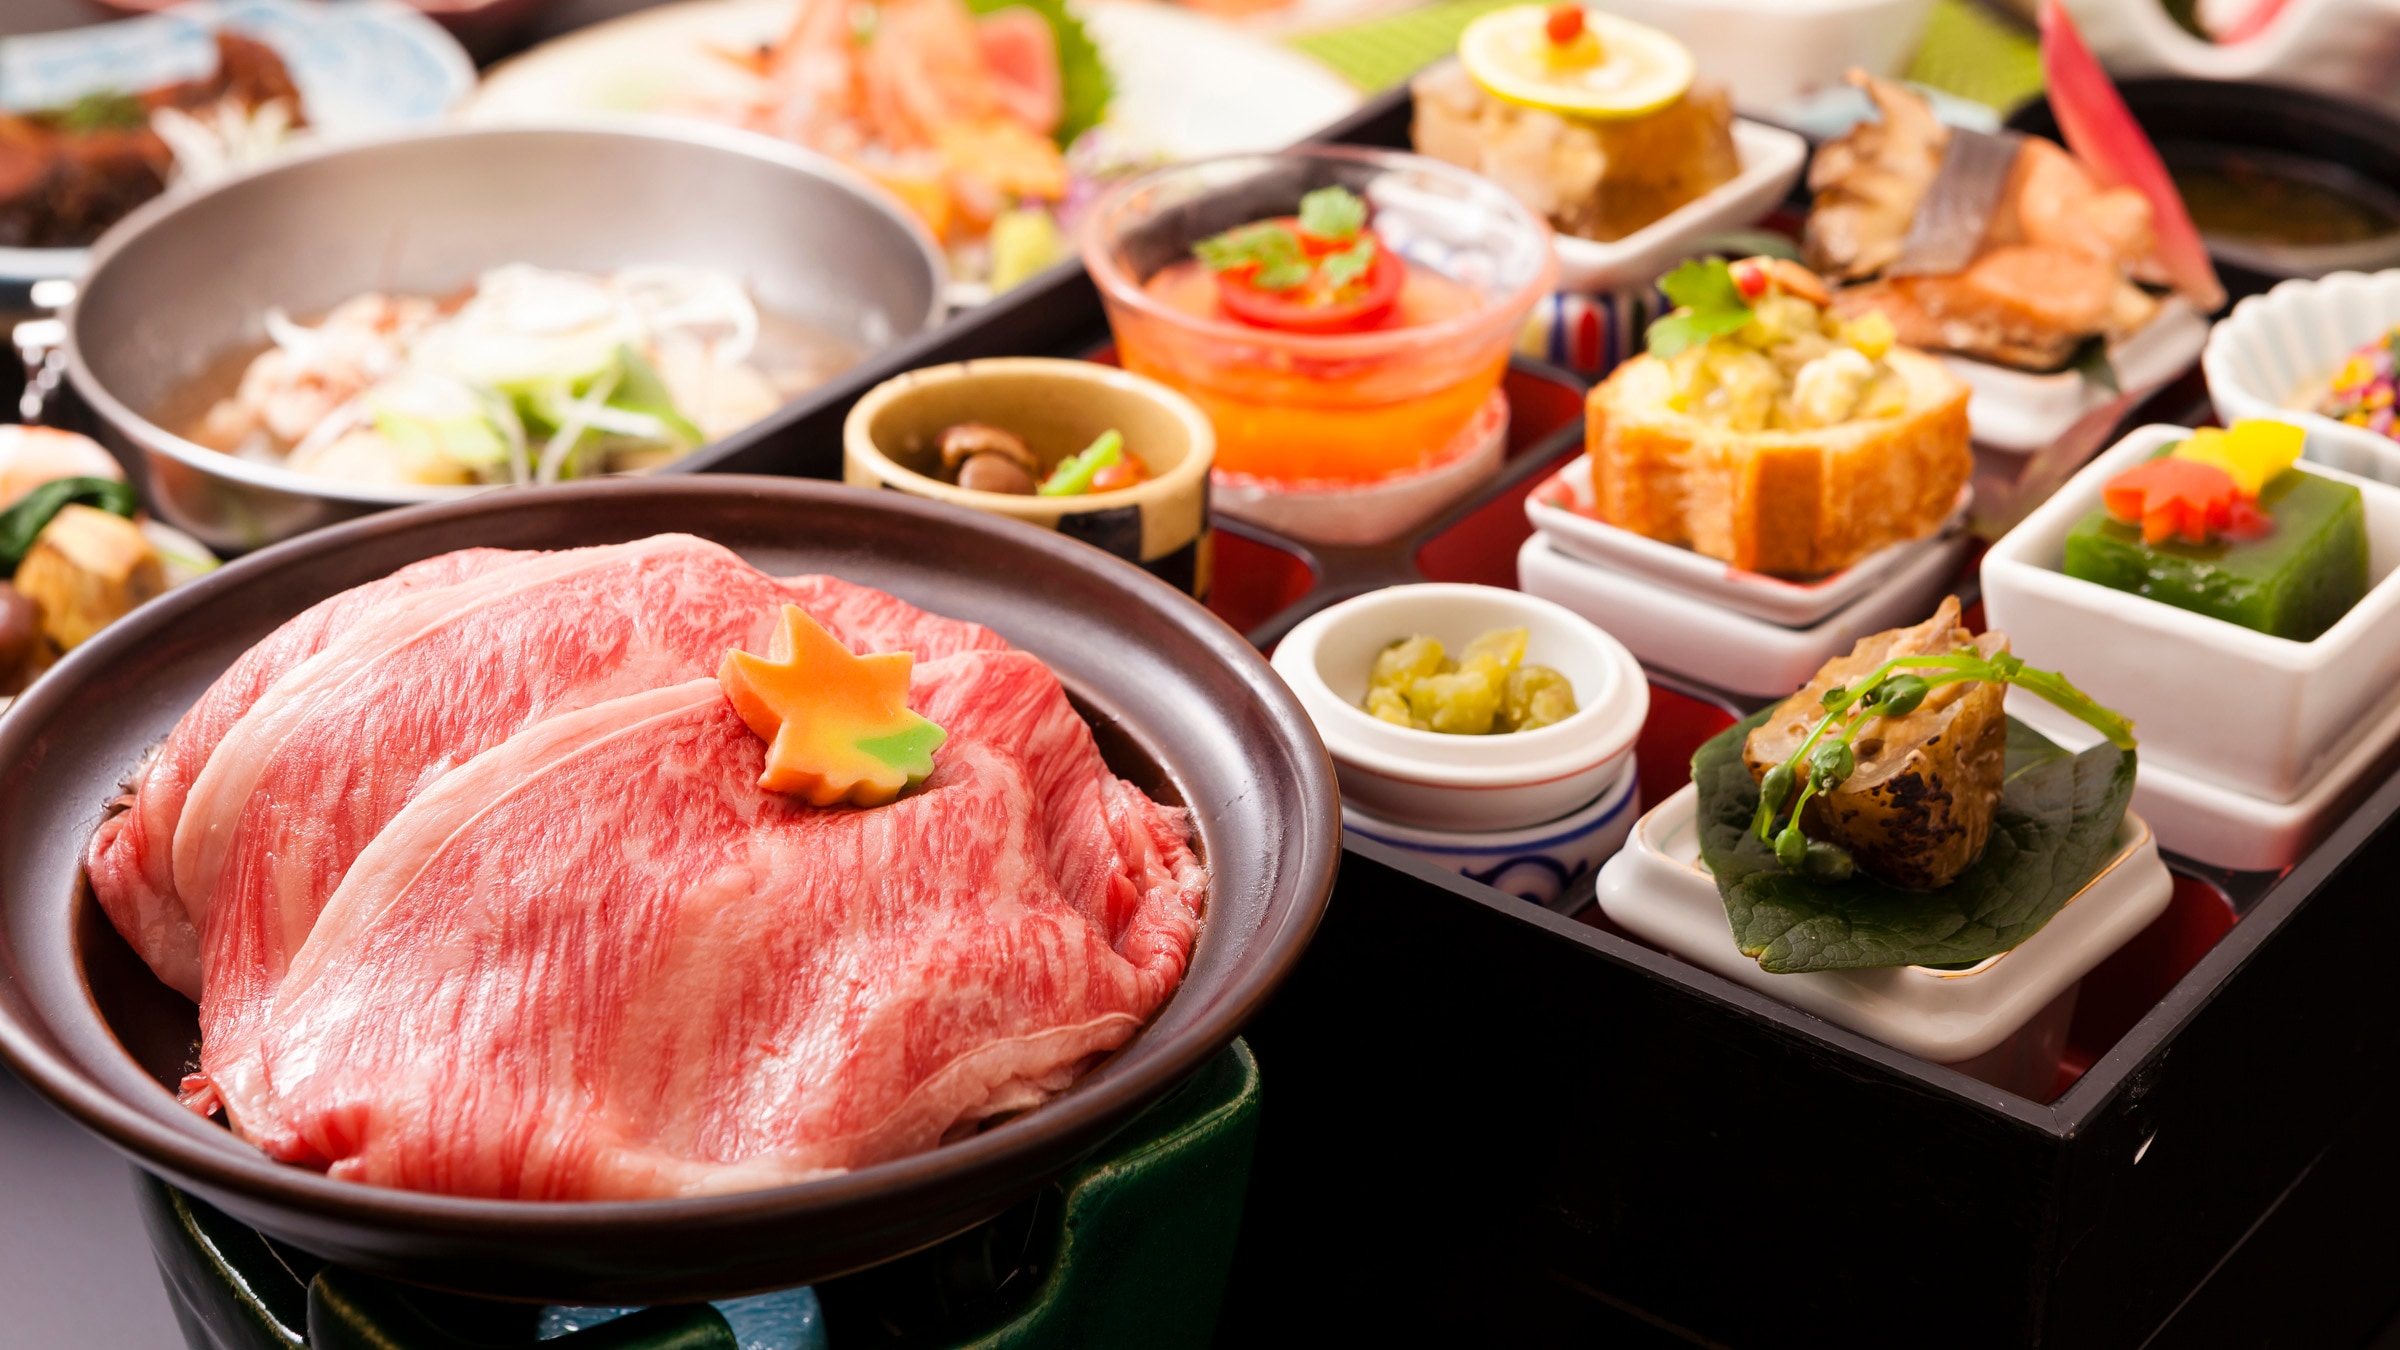 Makanan kaiseki kreatif ala Jepang yang menampilkan sukiyaki daging sapi Yamagata, yang disukai banyak orang☆